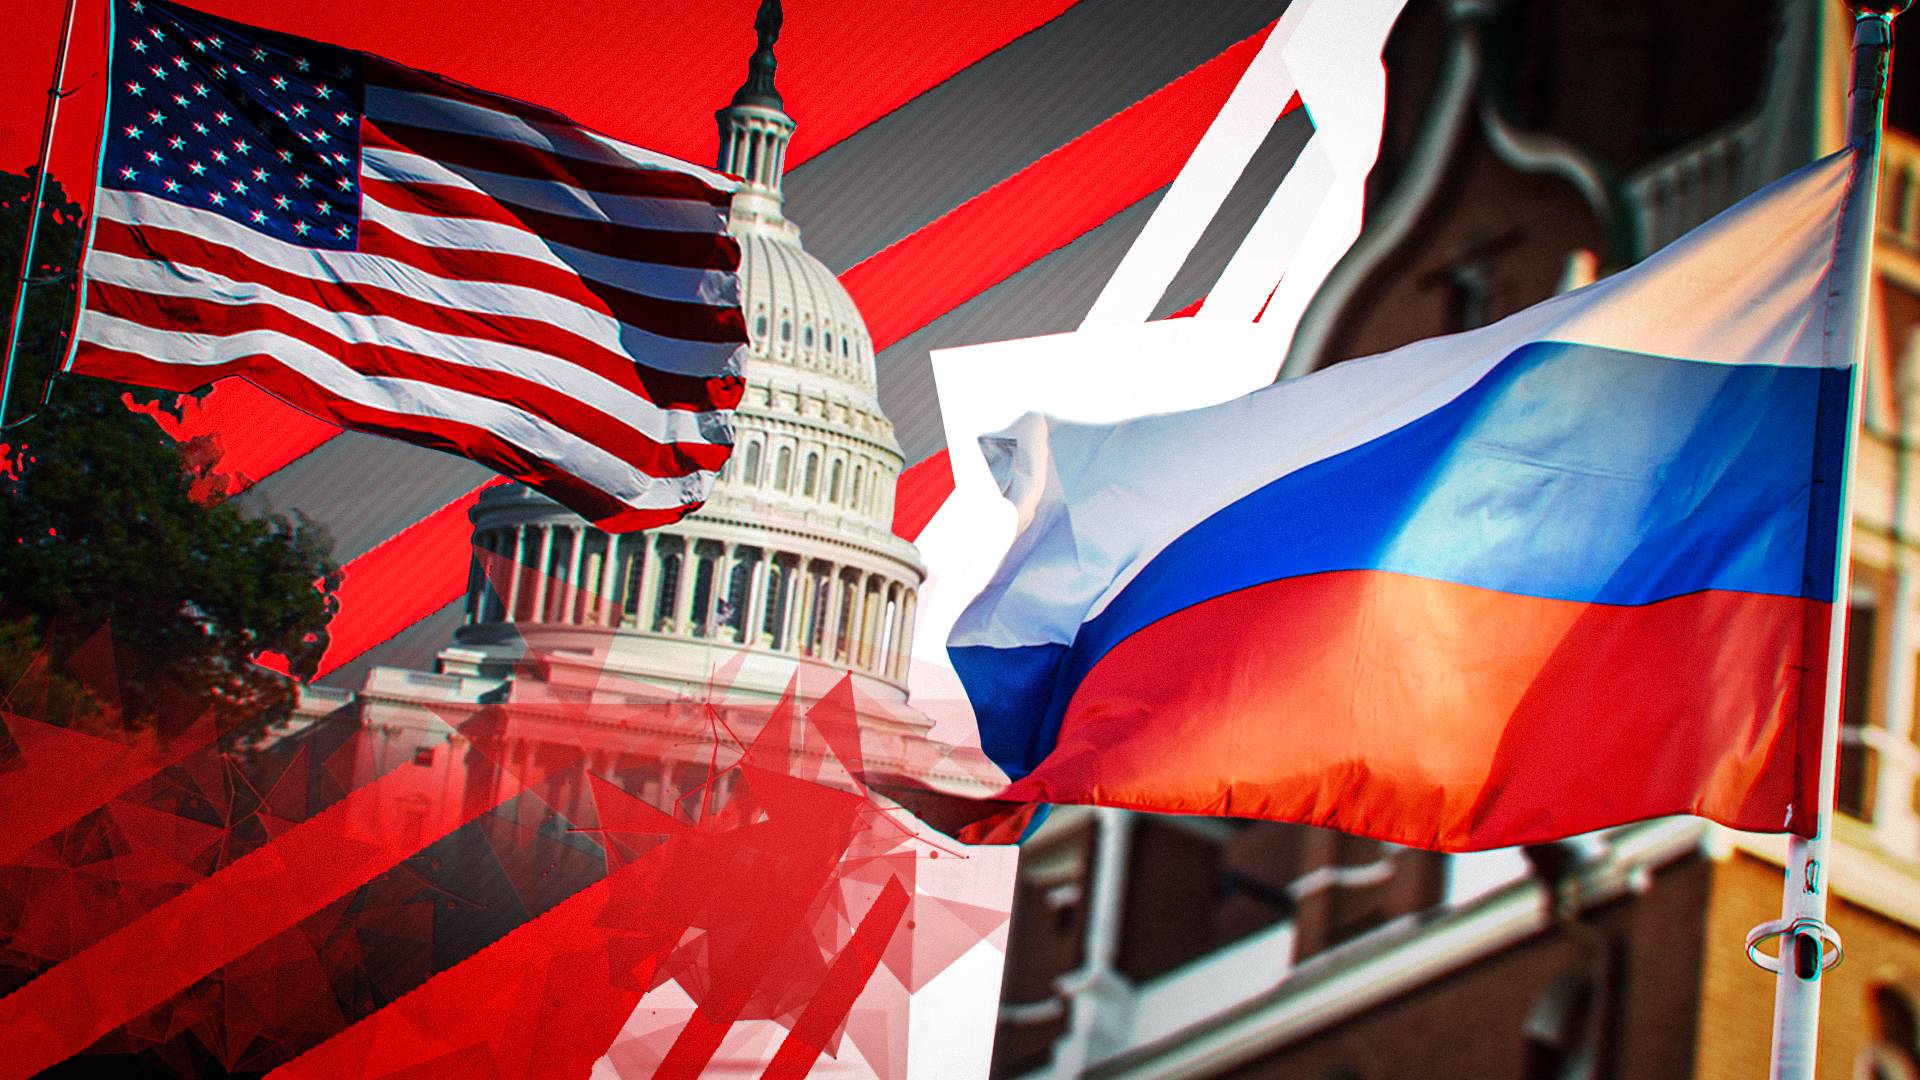 Винокуров: зеркальные меры России вынудили дипломатов США пожалеть о действиях Вашингтона